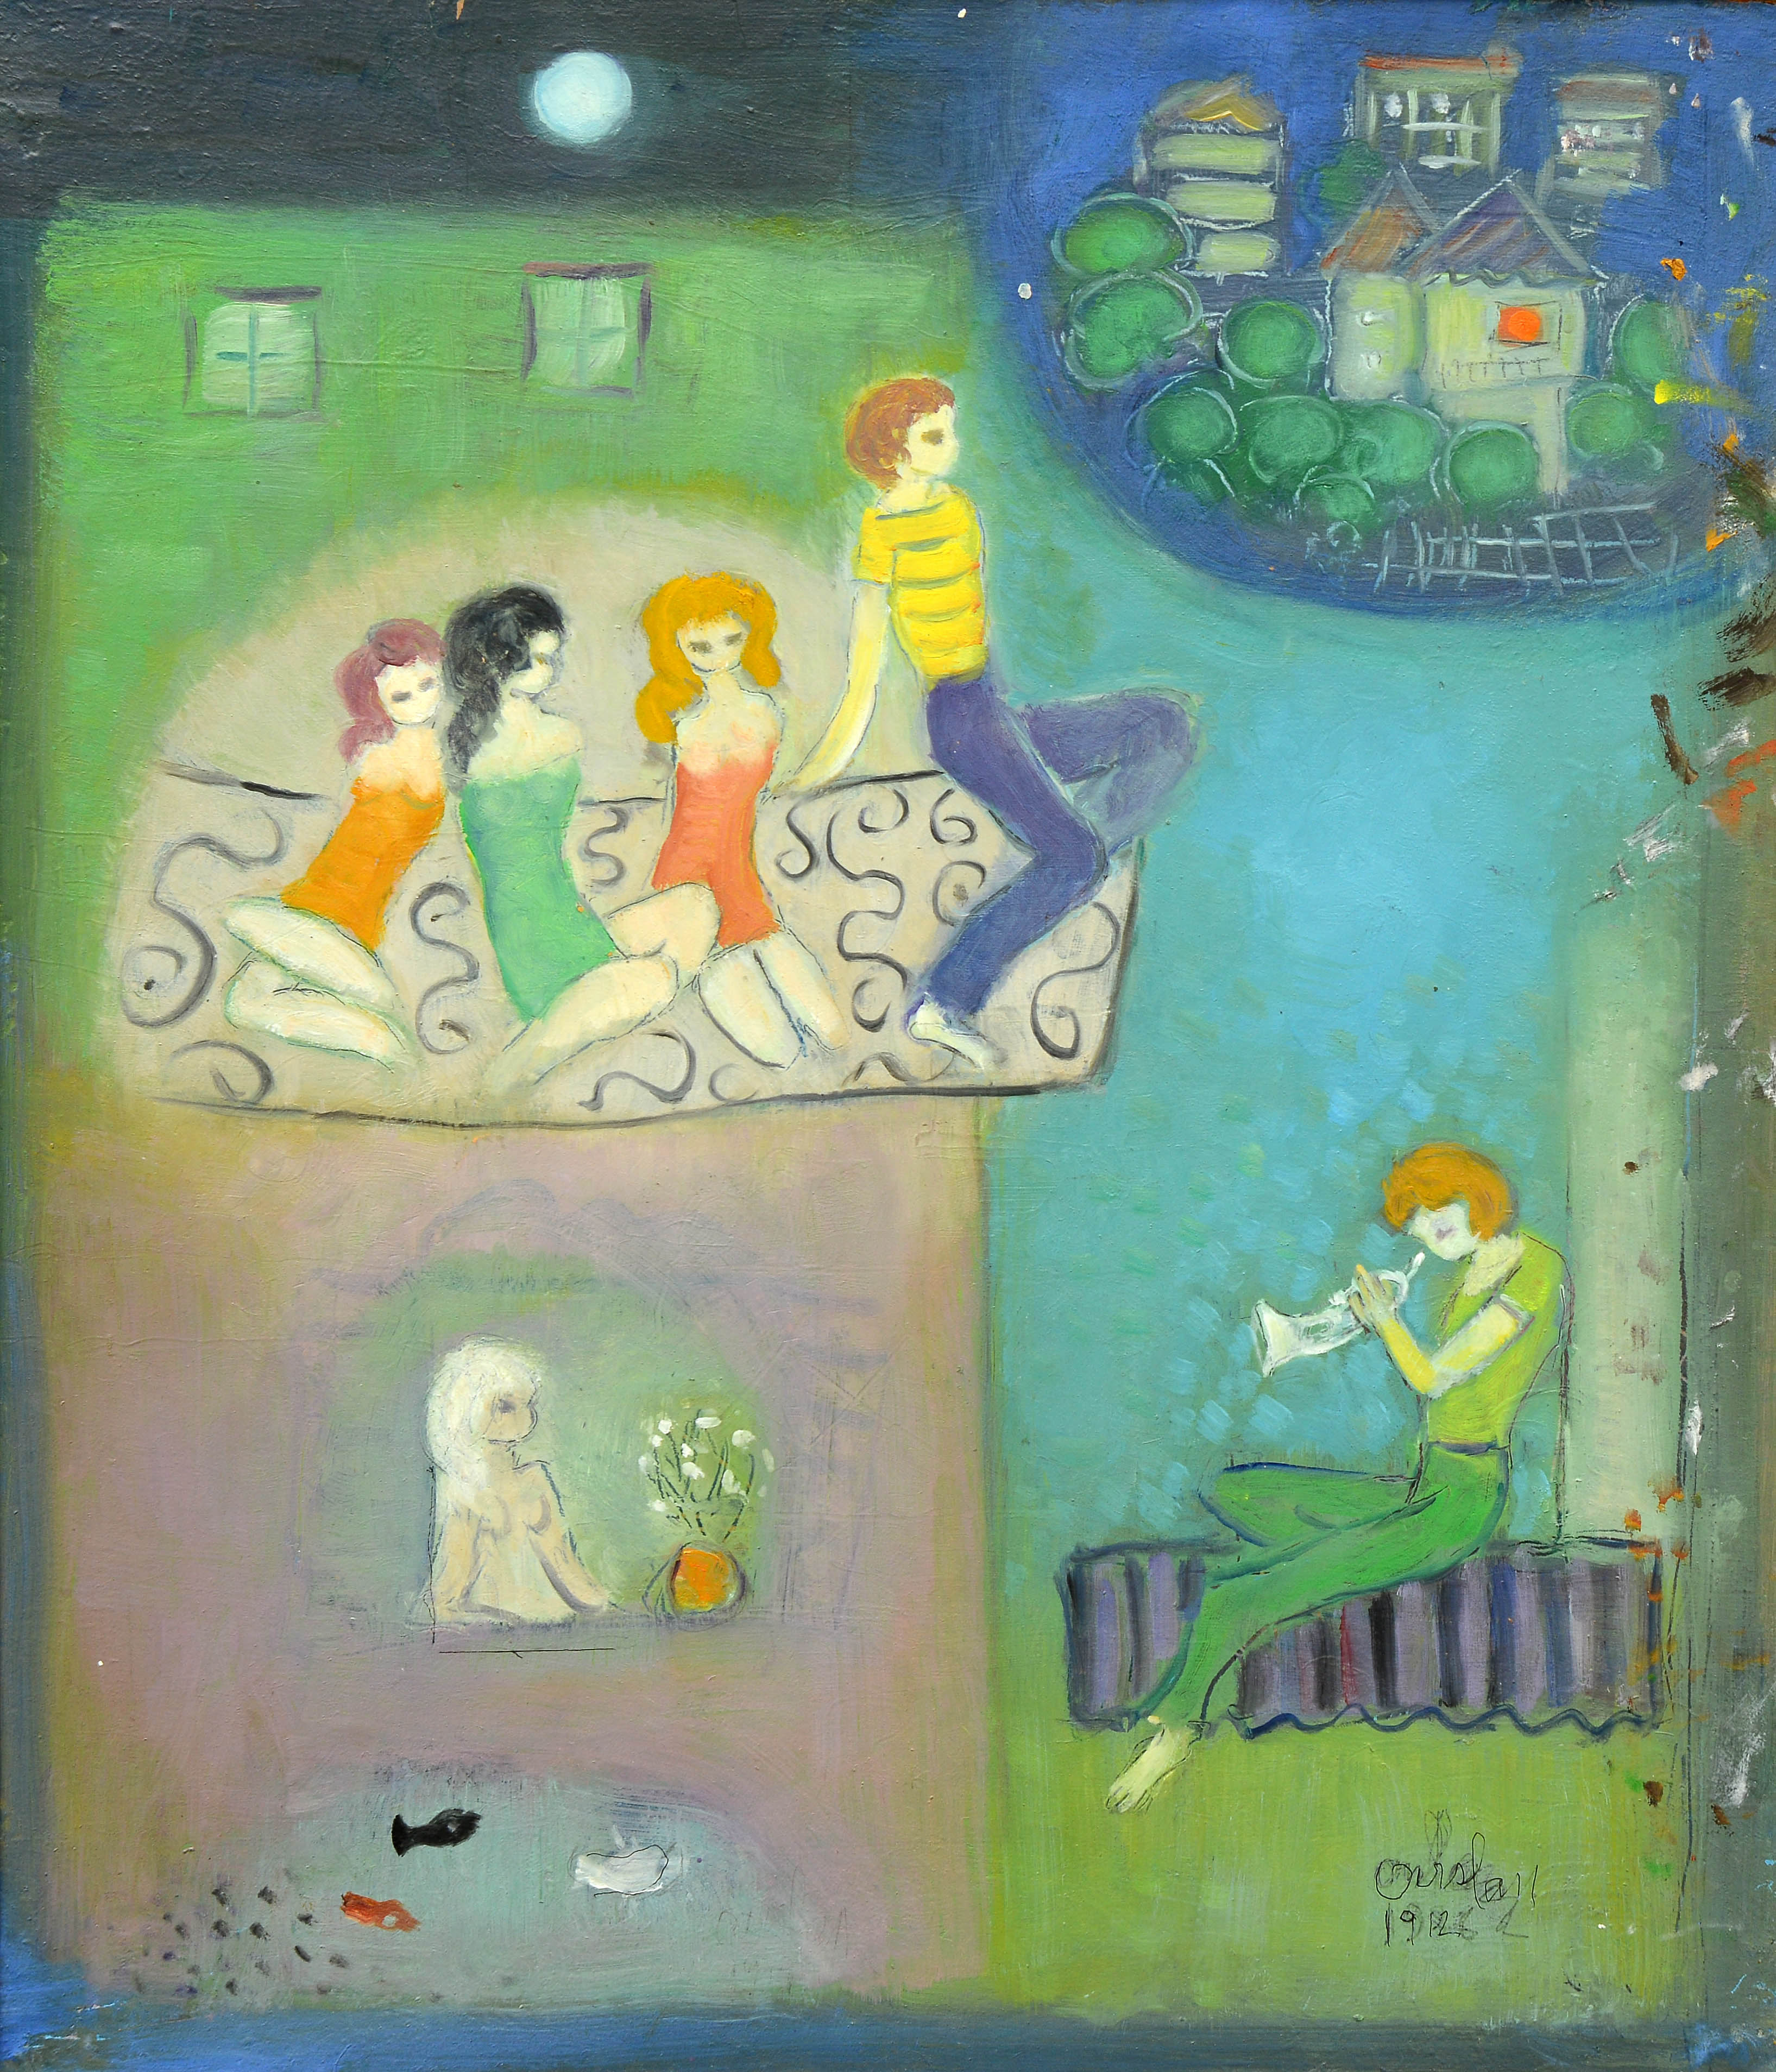 İsimsiz- Untitled, 198, Duralit üzerine yağlıboya, Oil on duralite, 70X60 cm